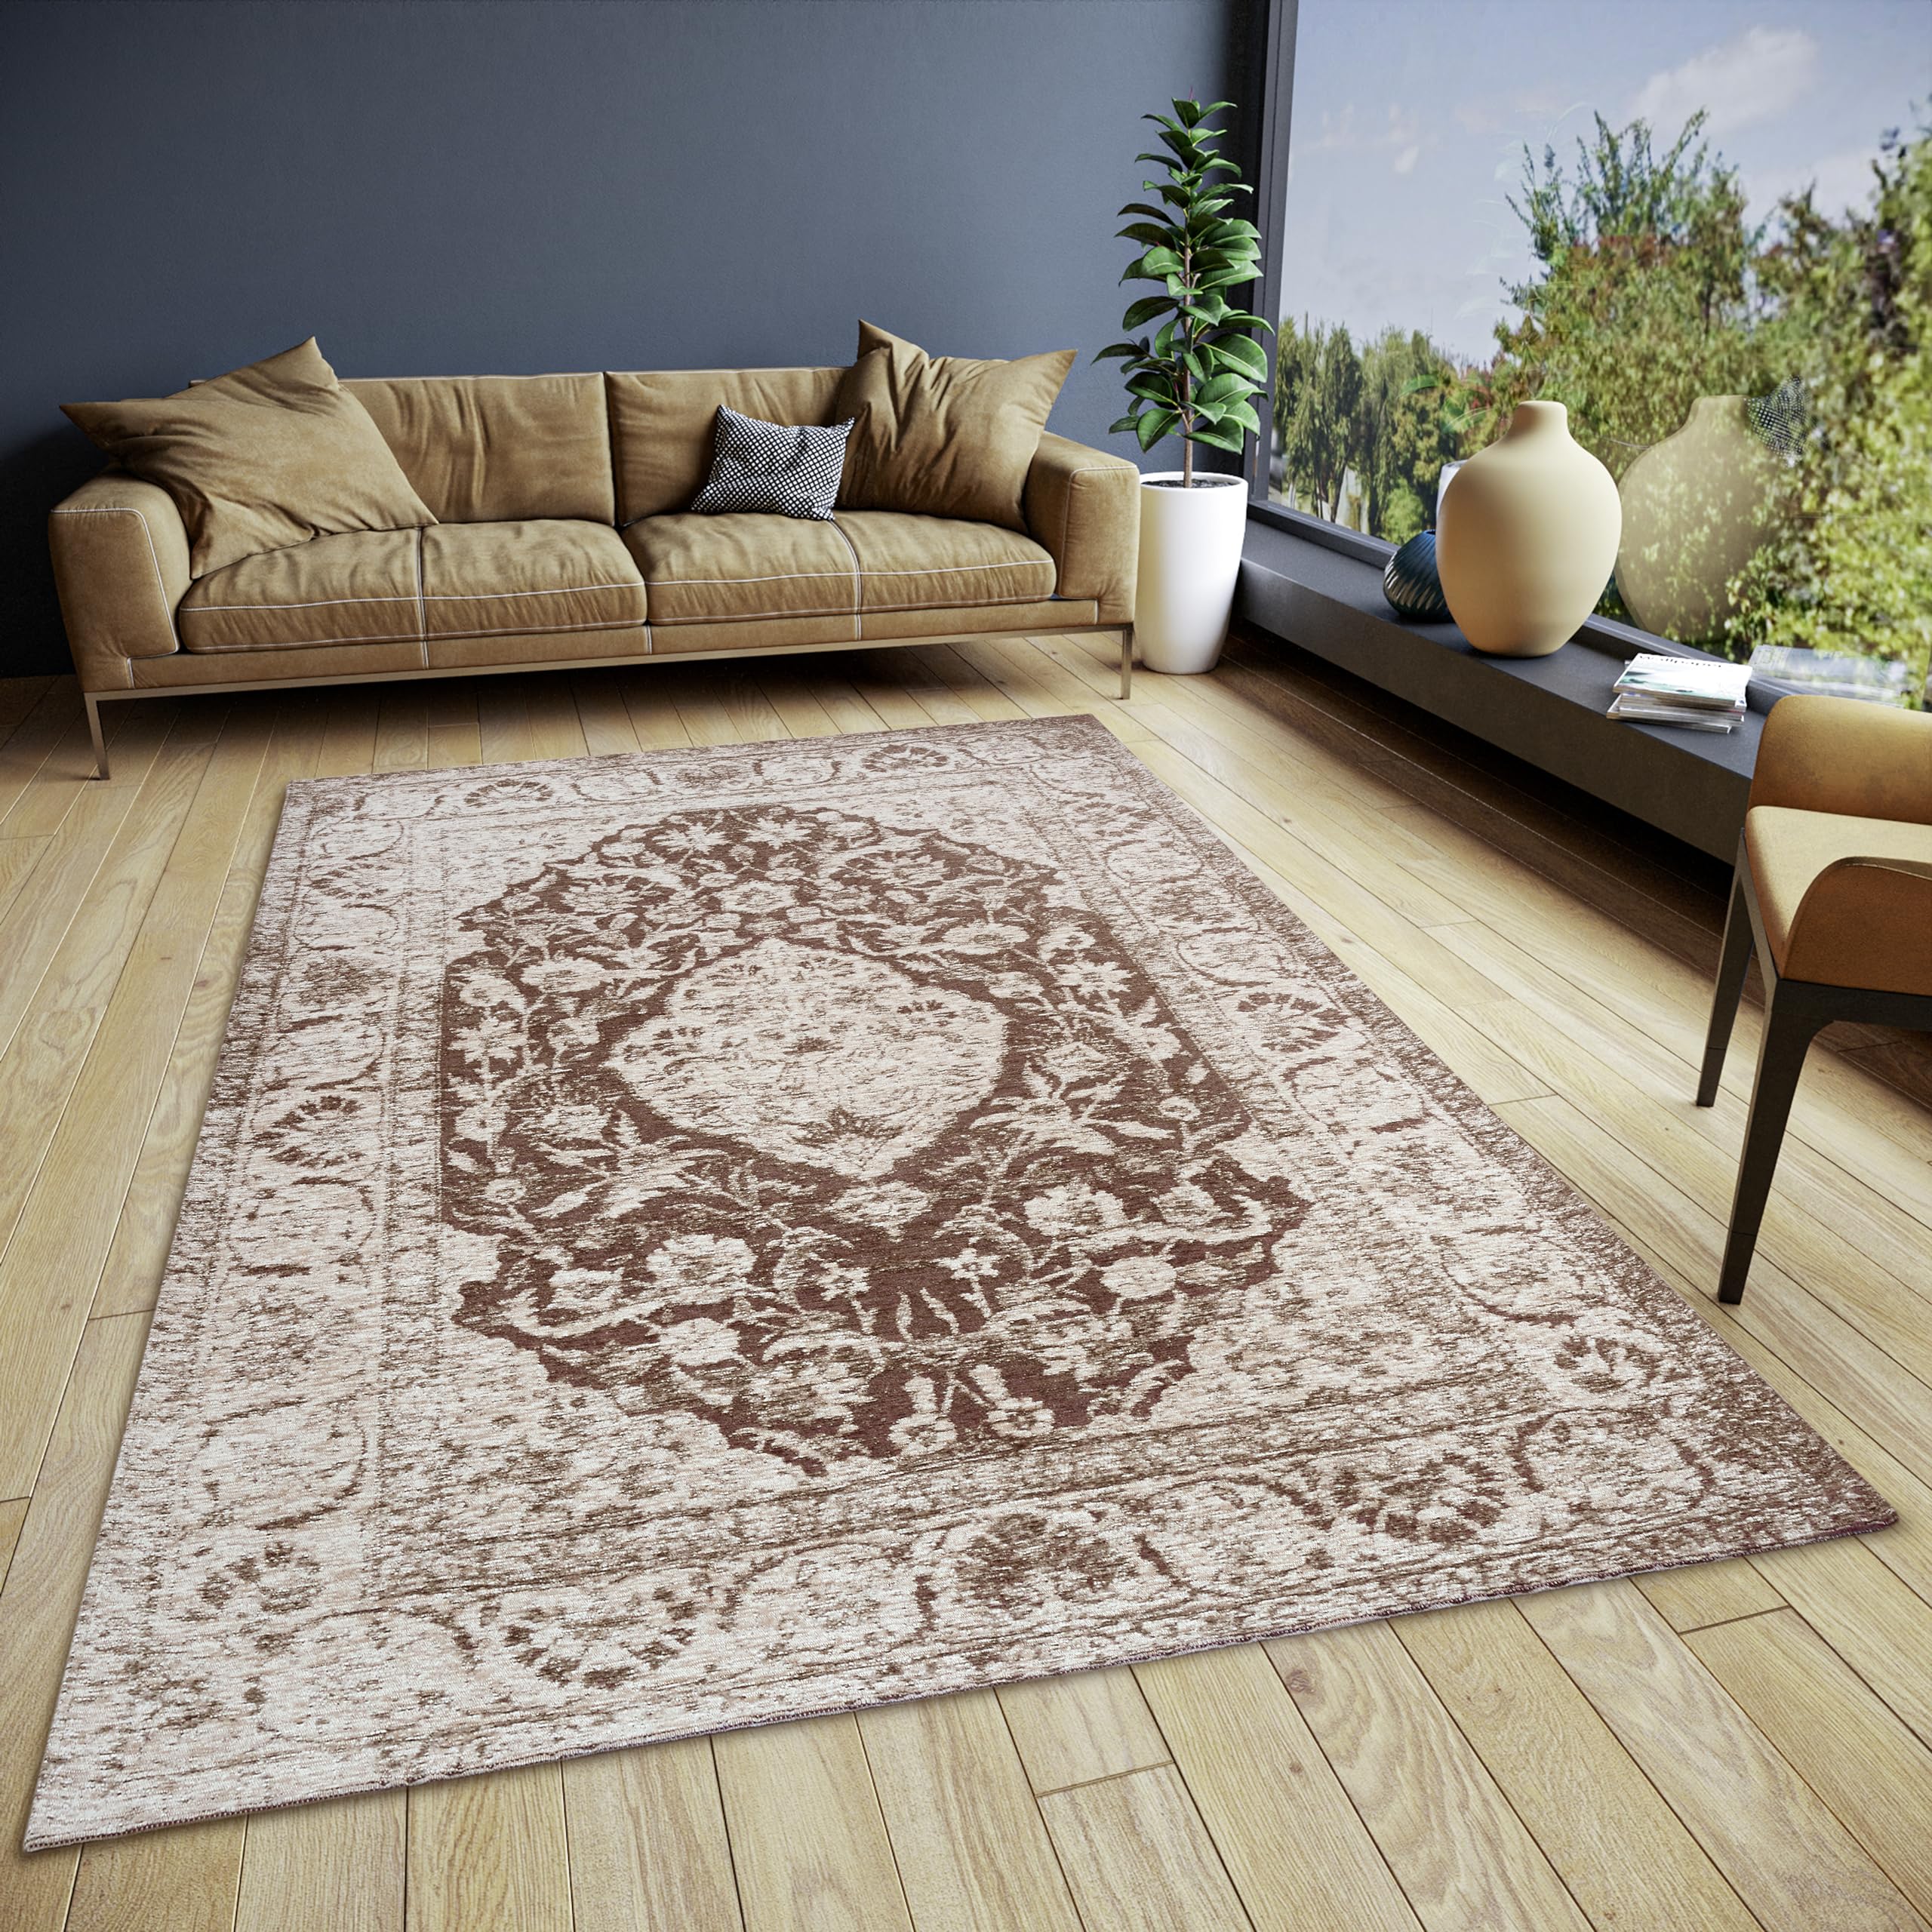 Hanse Home Mahat Orientalischer Teppich – Läufer Orientalisch klassisch gewebt mit Bordüre Vintage-Look, leicht Glänzend Flachgewebe für Schlafzimmer, Esszimmer, Wohnzimmer, Flur – Braun, 80x165cm